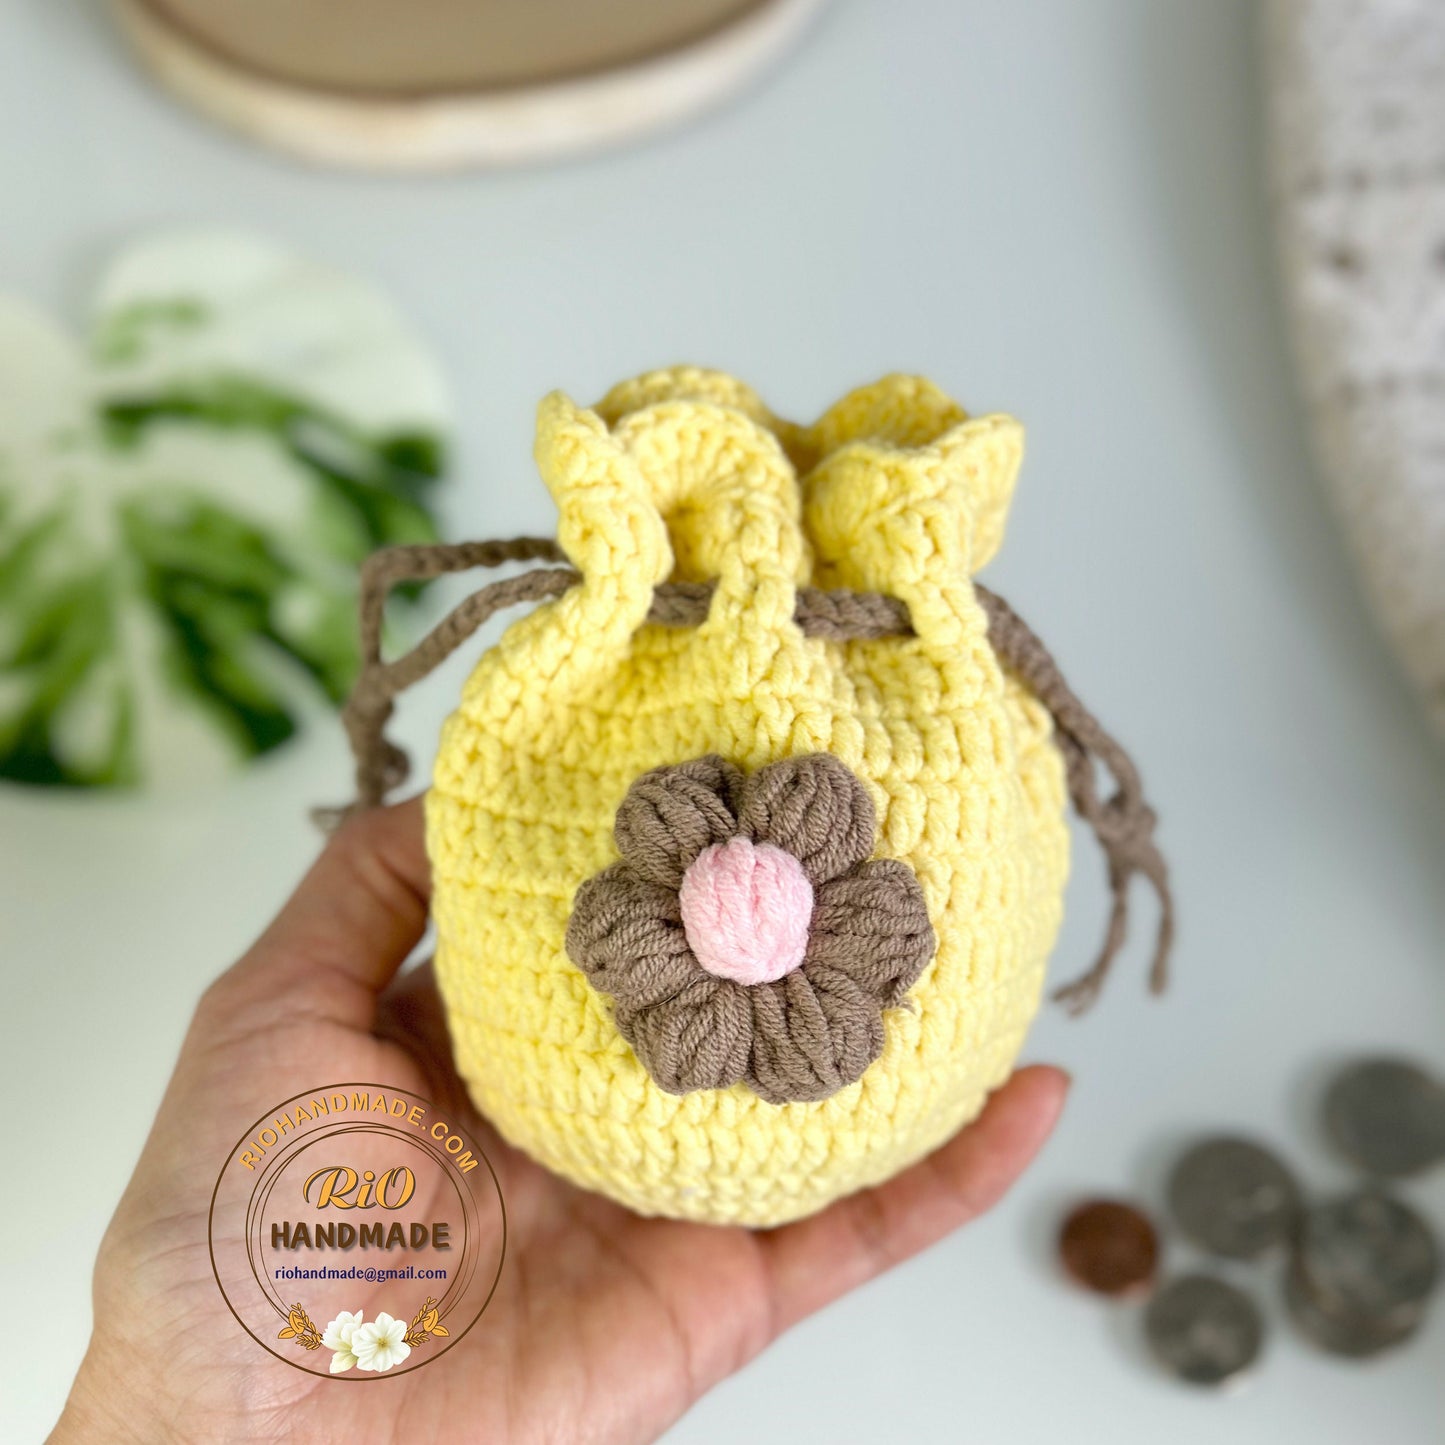 Rio Handmade Flower Pouch, Crochet Flower Pouch, Flower Purse, Cute Mini Coin Bag, Daily Pouch